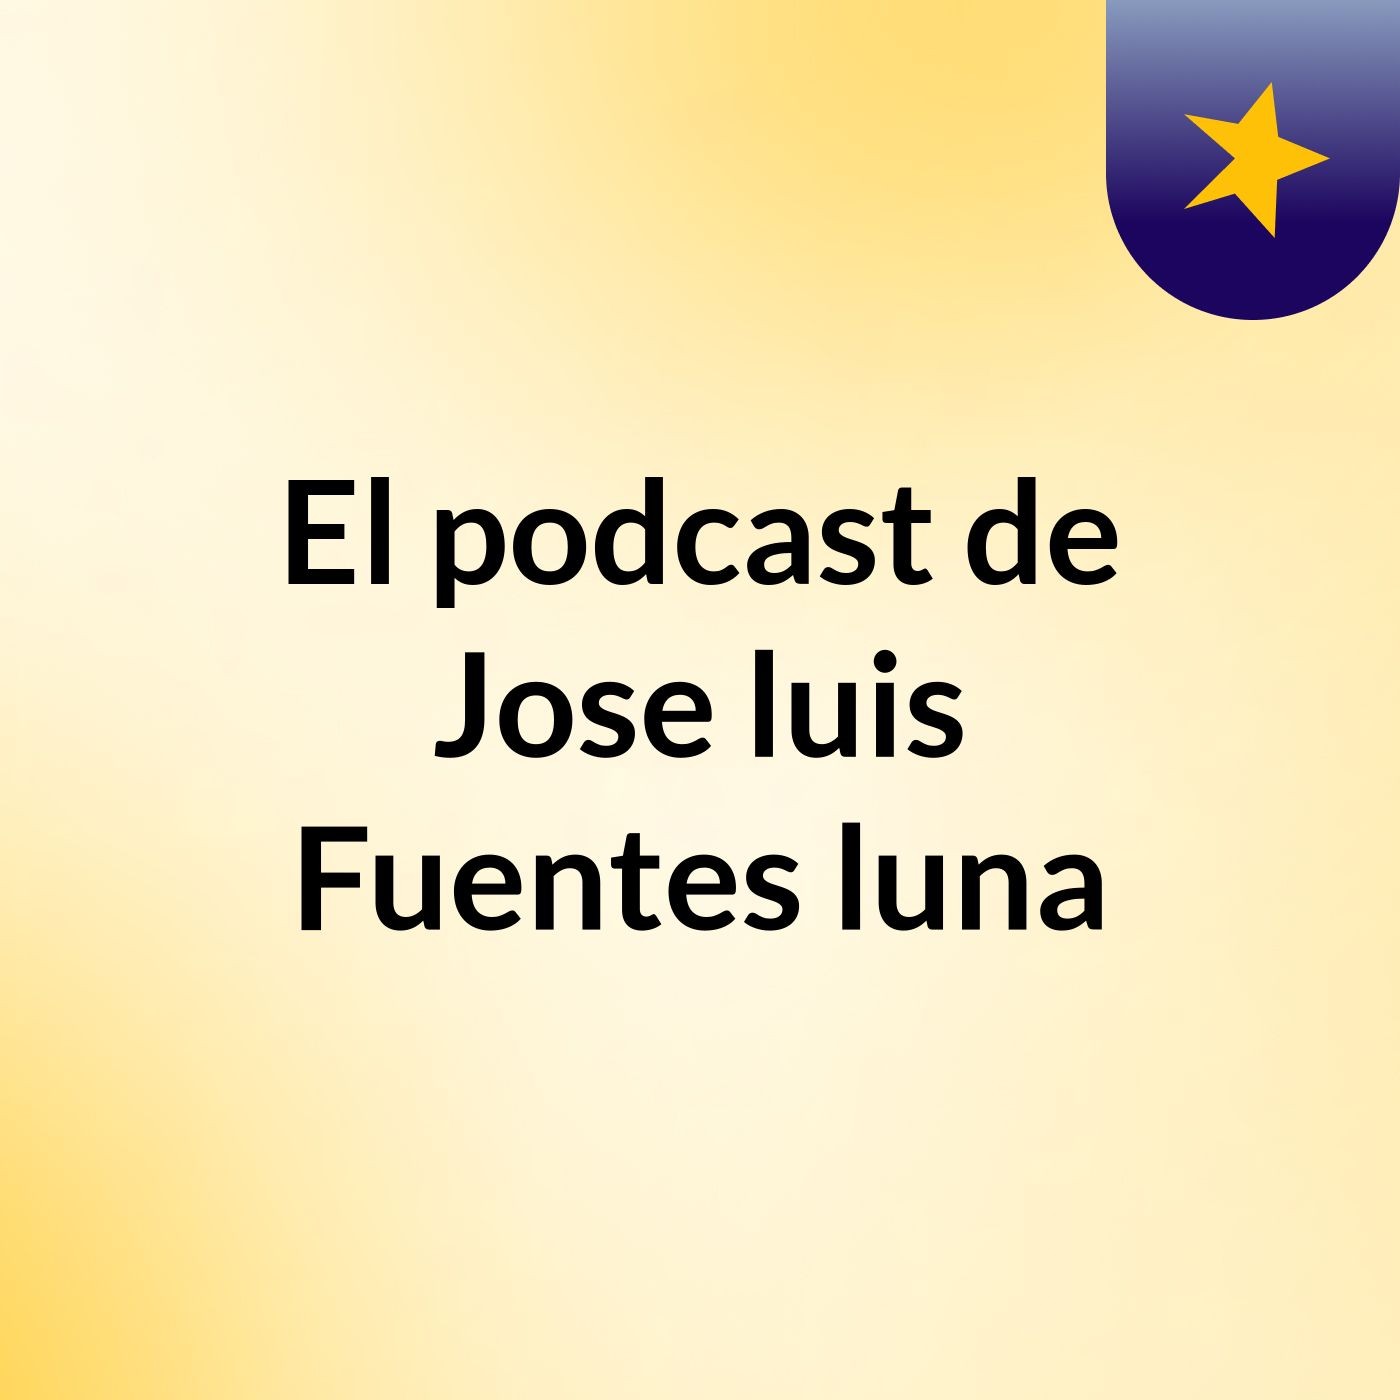 El podcast de Jose luis Fuentes luna